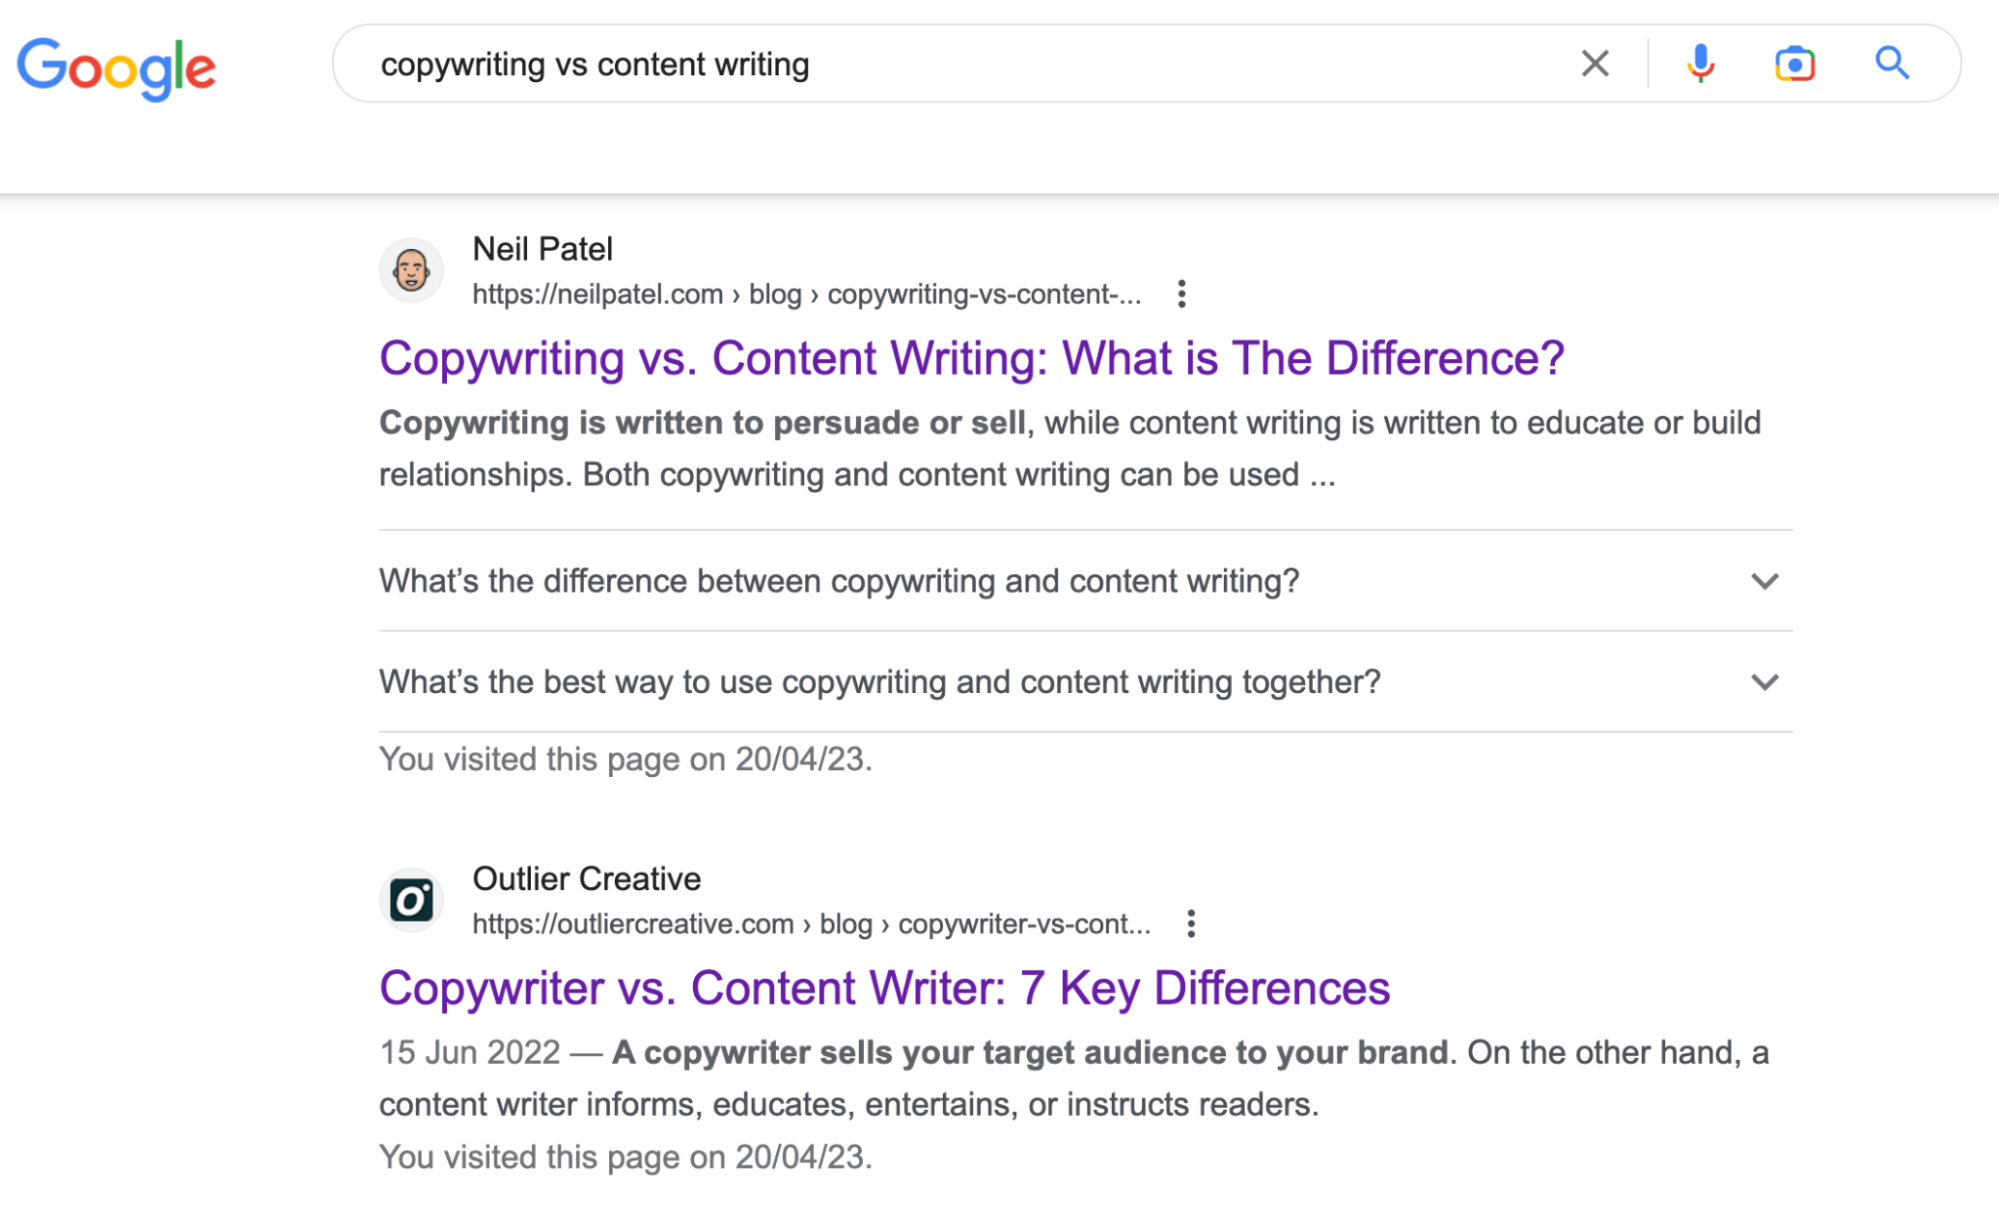 résultats de recherche Google pour "rédaction vs rédaction de contenu"